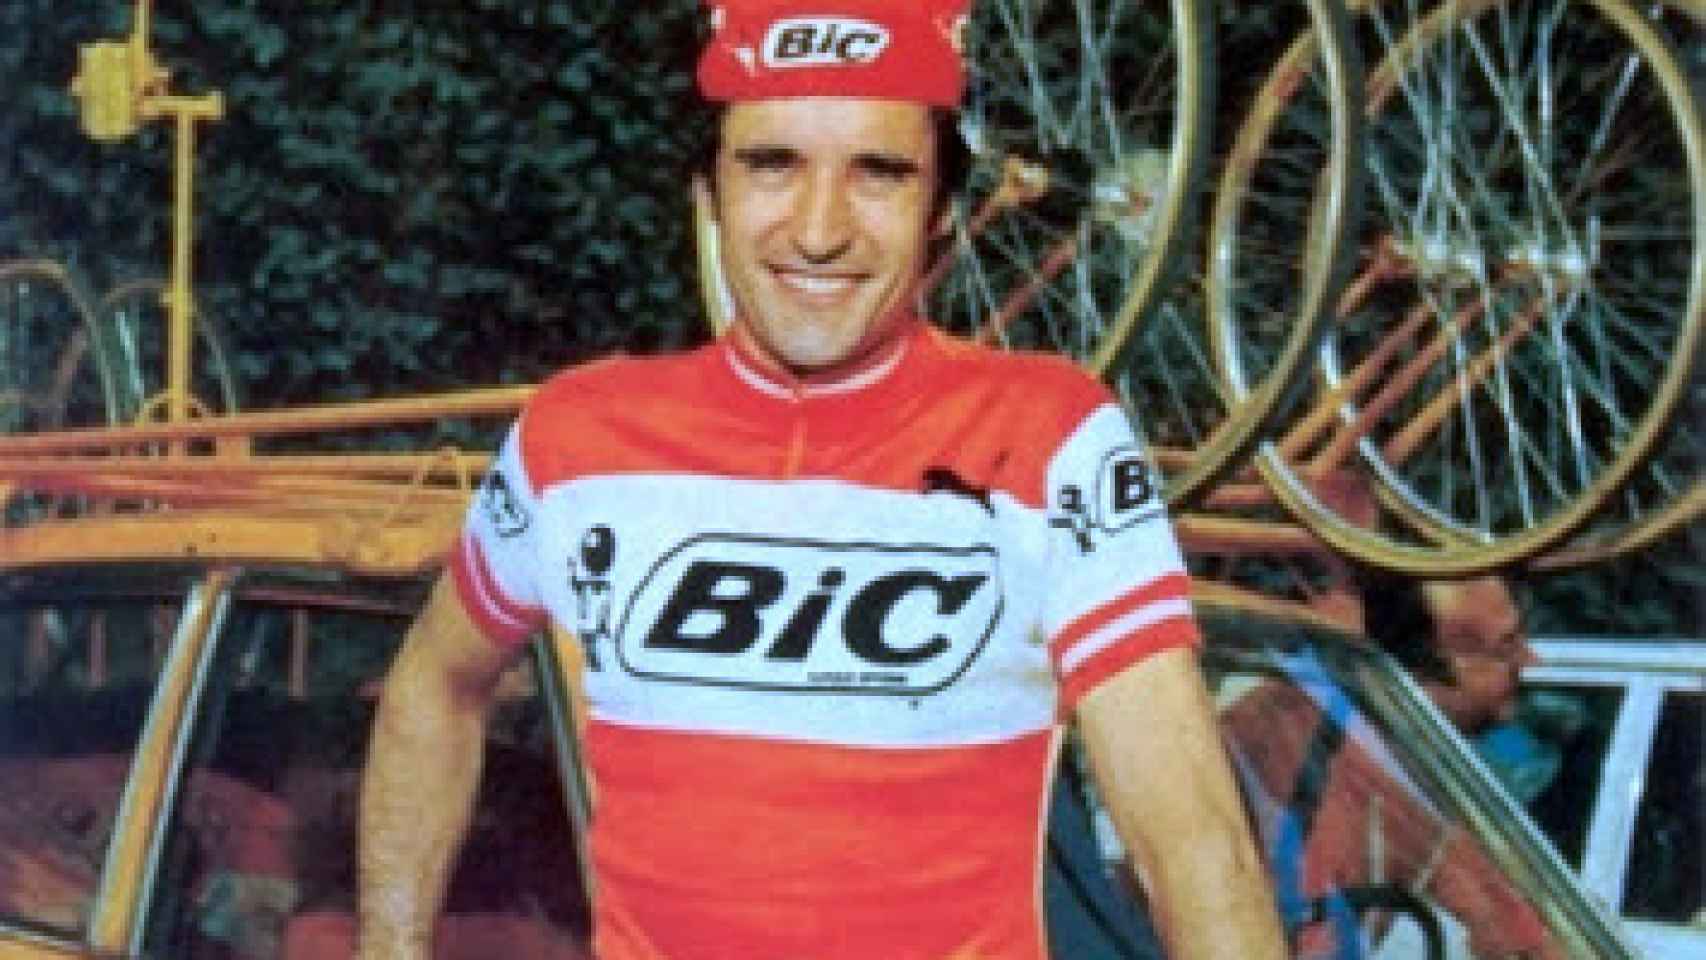 Luis Balagué en su etapa en el equipo Bic